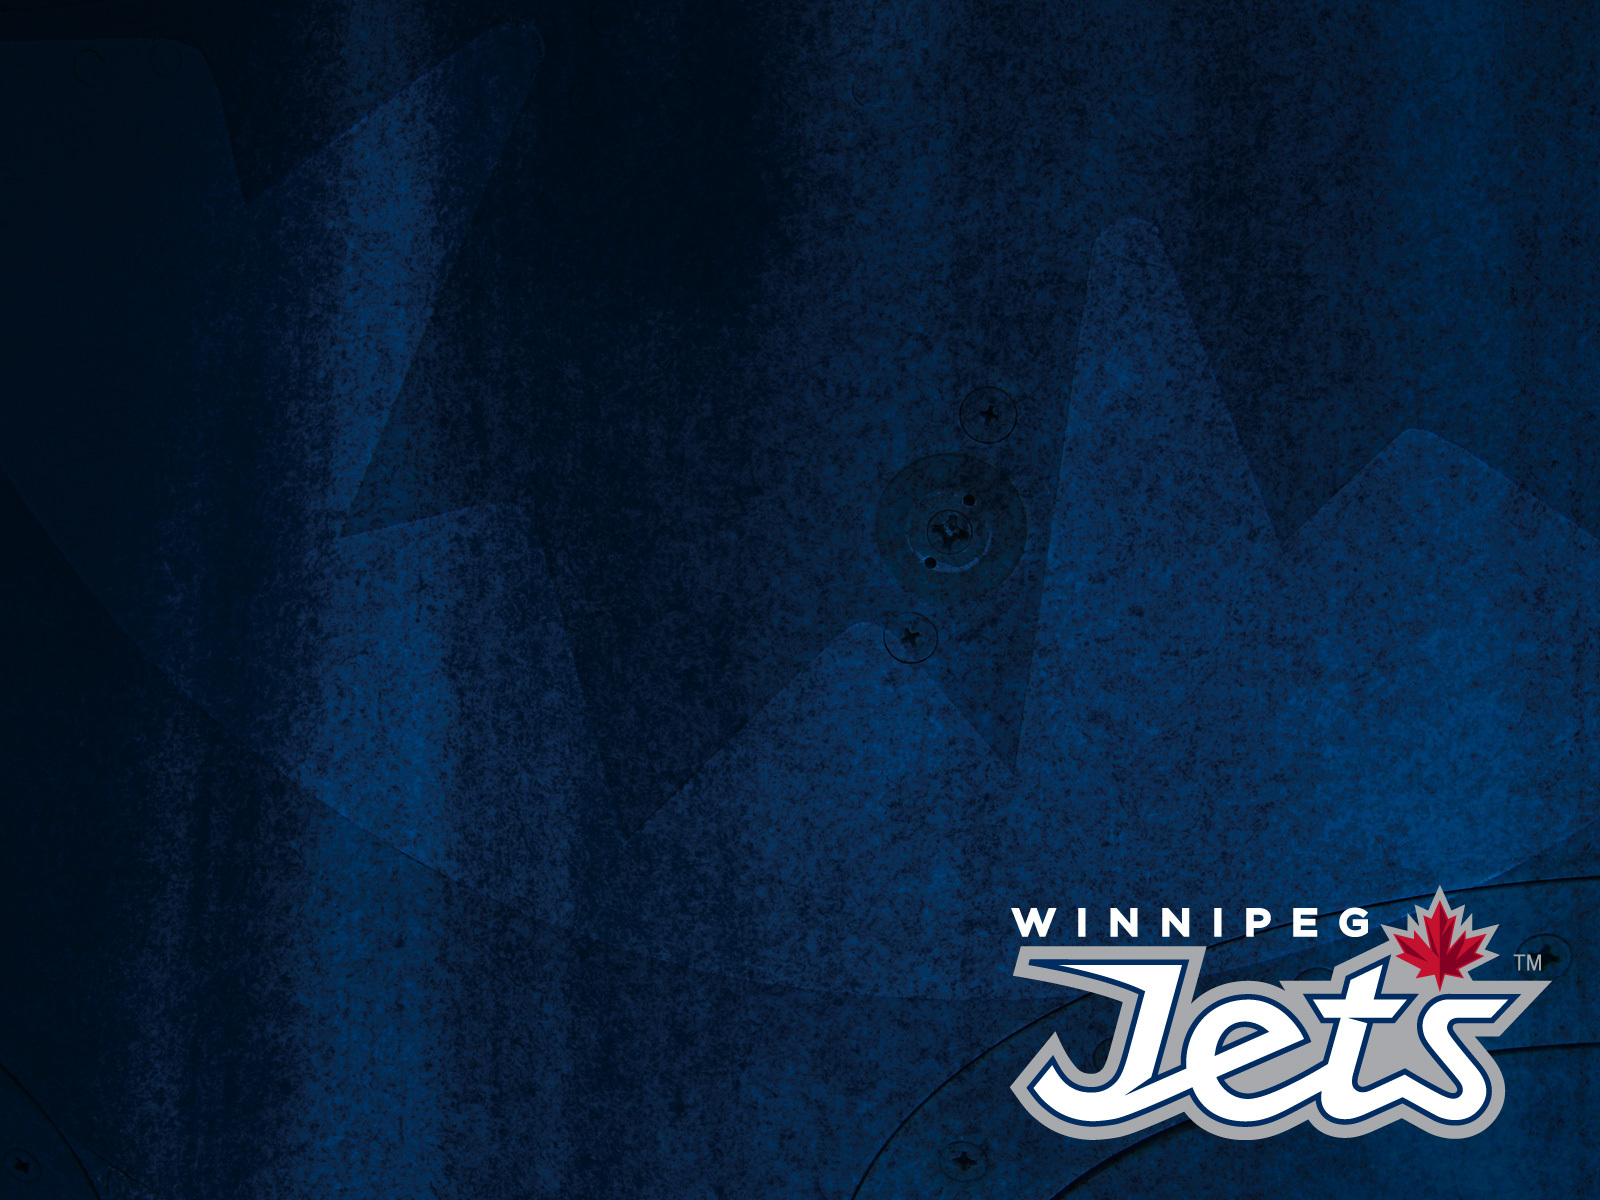 Winnipeg Jets   Jets Desktop Wallpapers   Winnipeg Jets   Multimedia